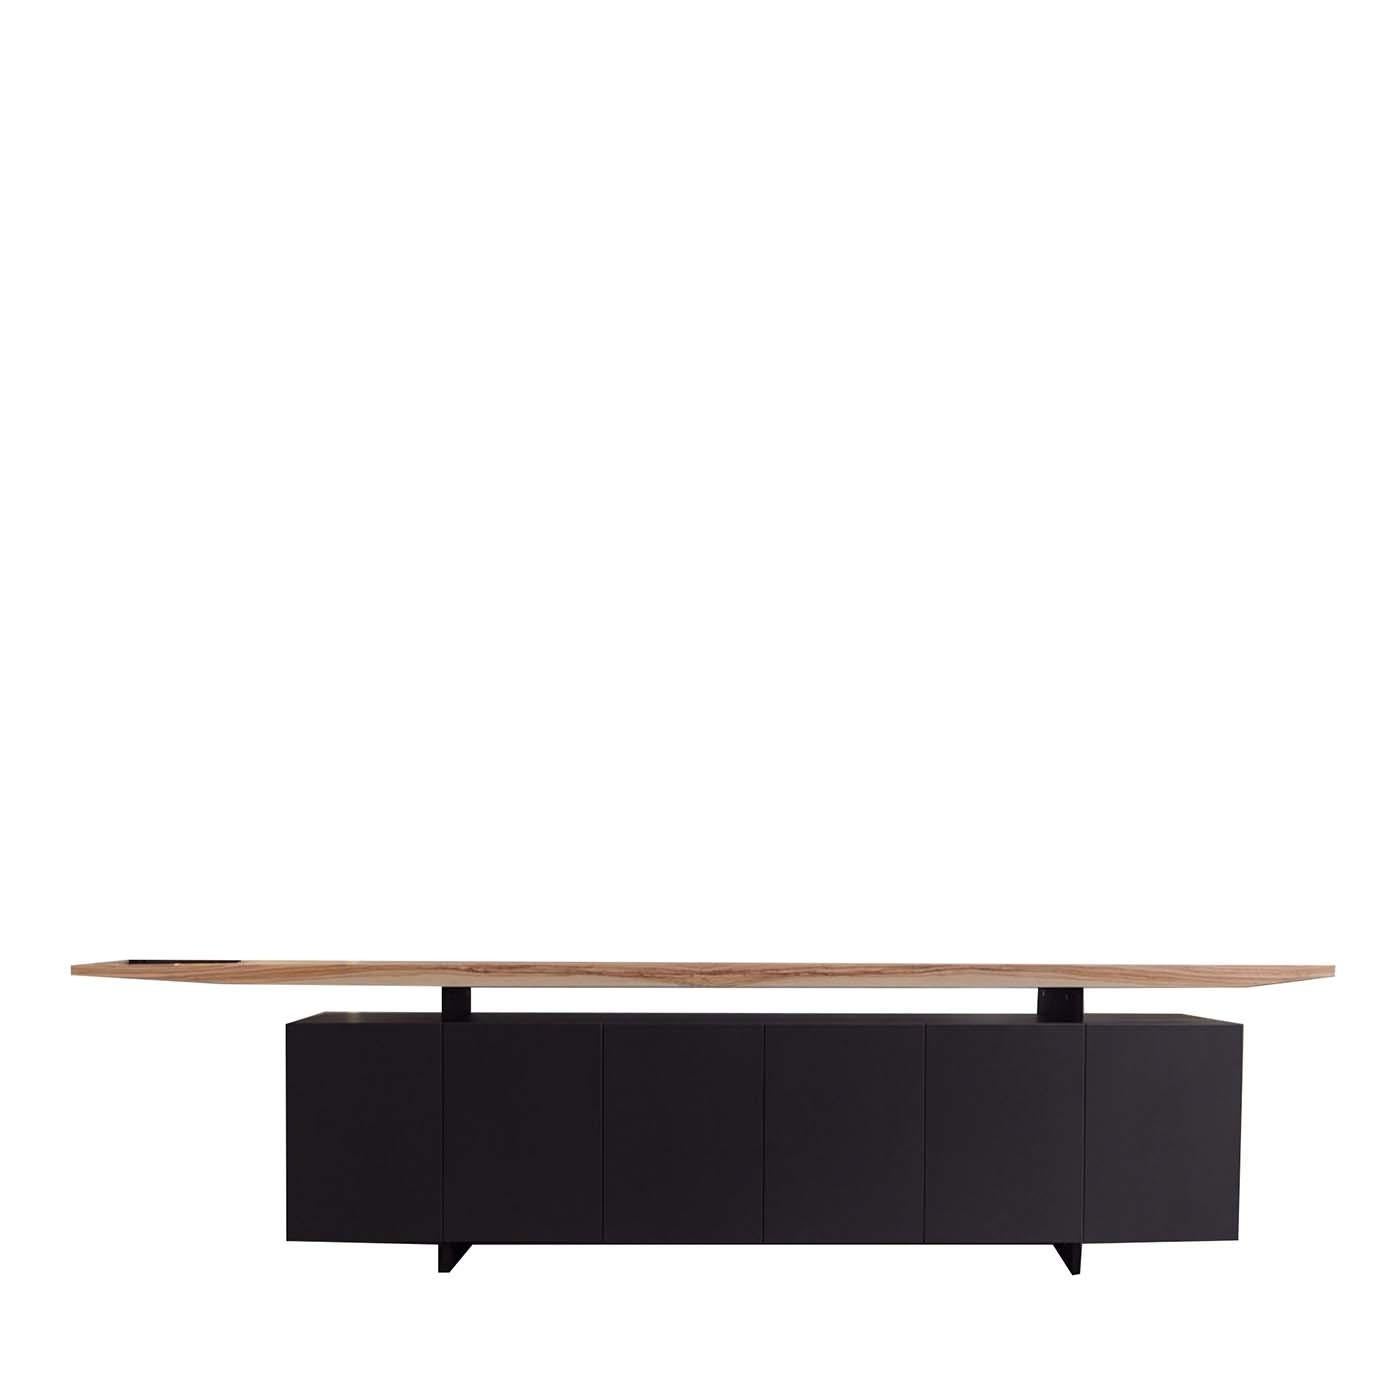 Dieses minimalistische, elegante Sideboard aus lackiertem Holz mit Flügeltüren zeichnet sich durch eine Platte aus hellem Olivenholz aus, die über der soliden, schwarzen Struktur des Möbels zu schweben scheint. Das Produkt kann auf Anfrage angepasst